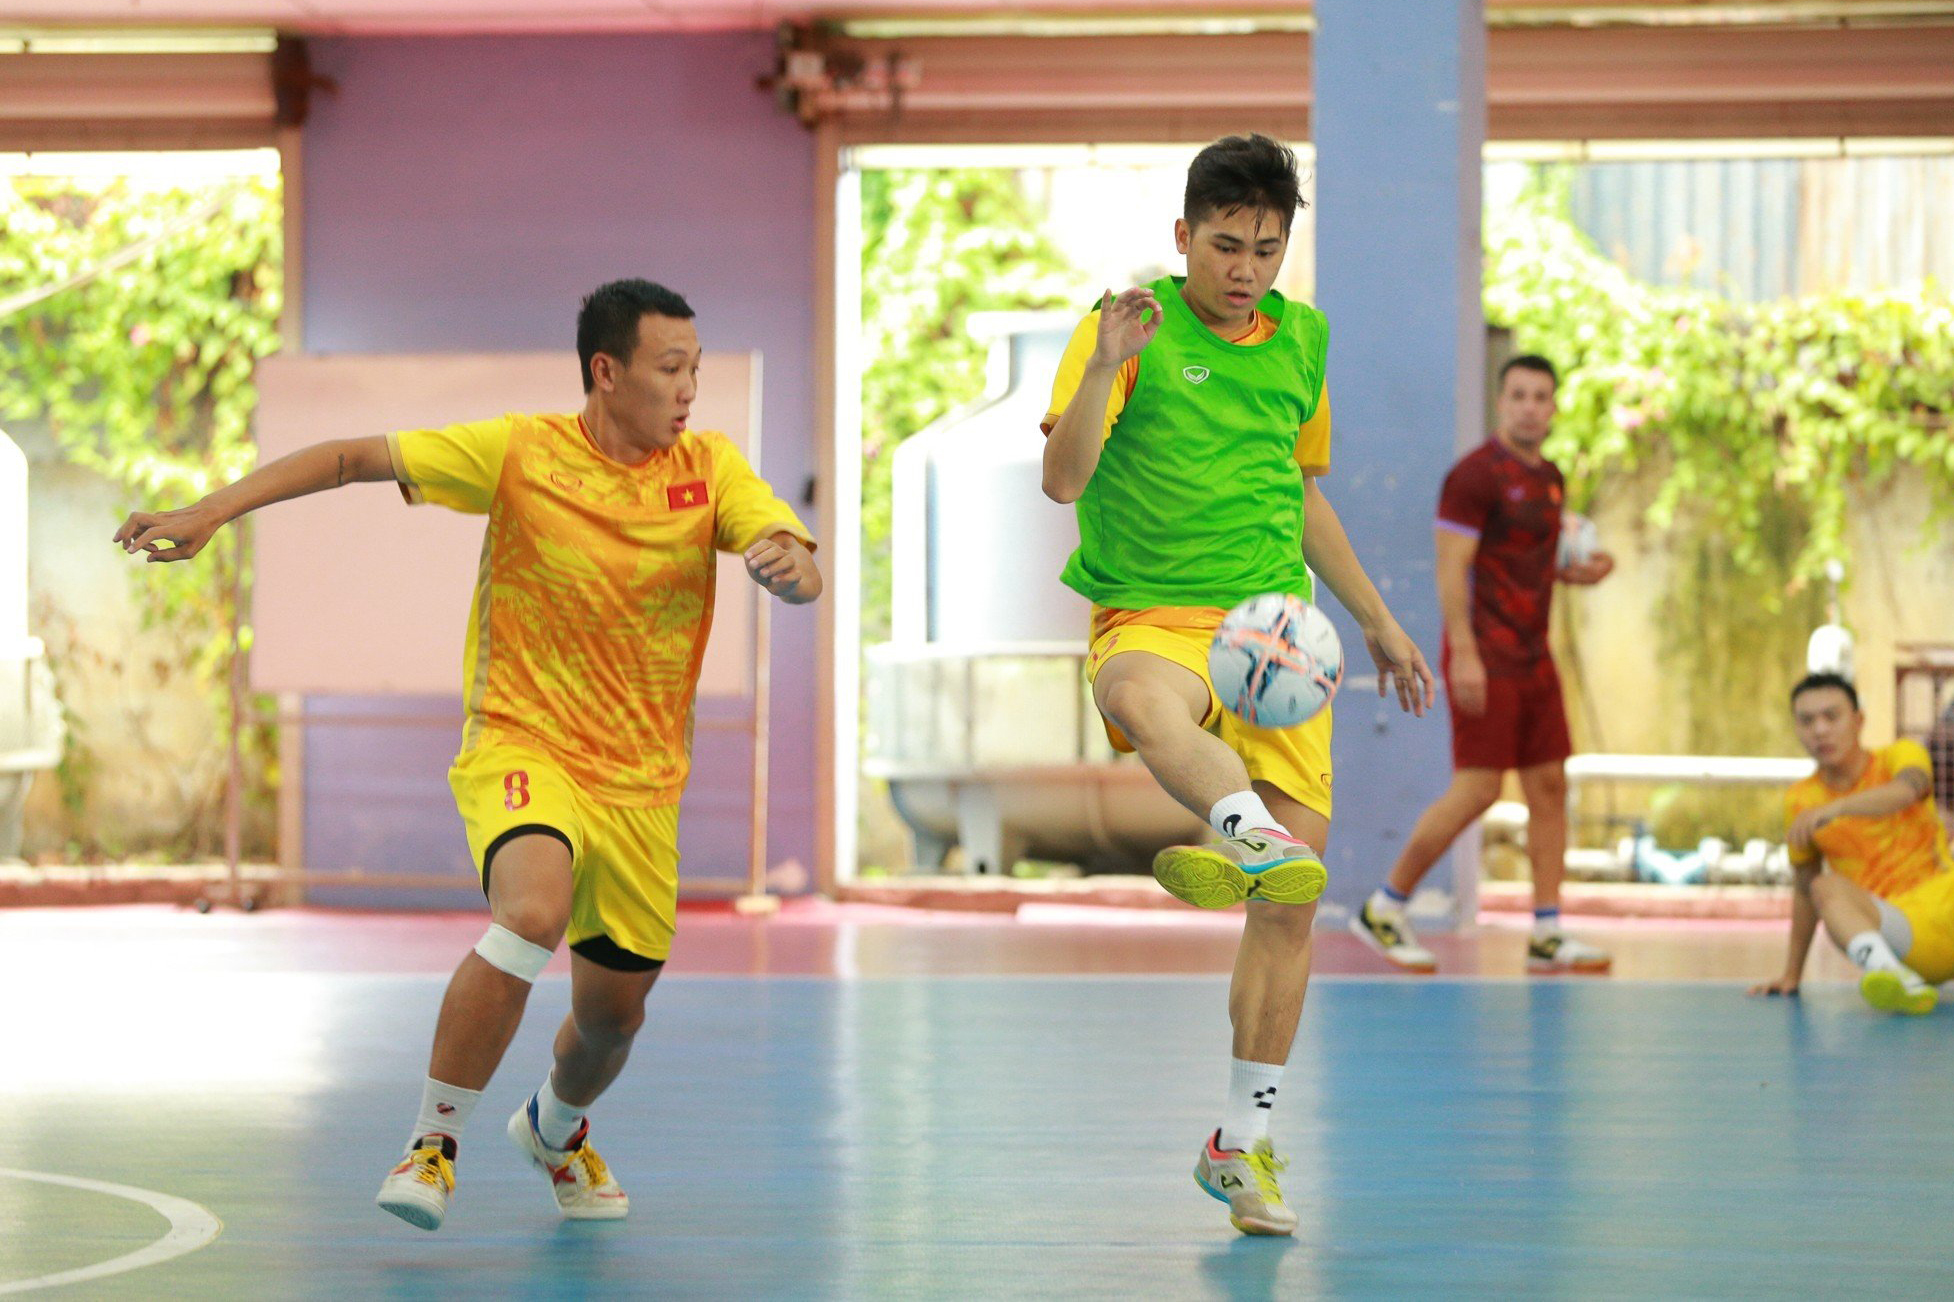 Đợt tập trung này, đội tuyển Việt Nam sẽ có hai trận giao hữu rất chất lượng trước Hungary (hạng 28 thế giới) và Nga (hạng 4) lần lượt diễn ra vào ngày 17 và 19.9 tại nhà thi đấu Quận 8 (TPHCM).